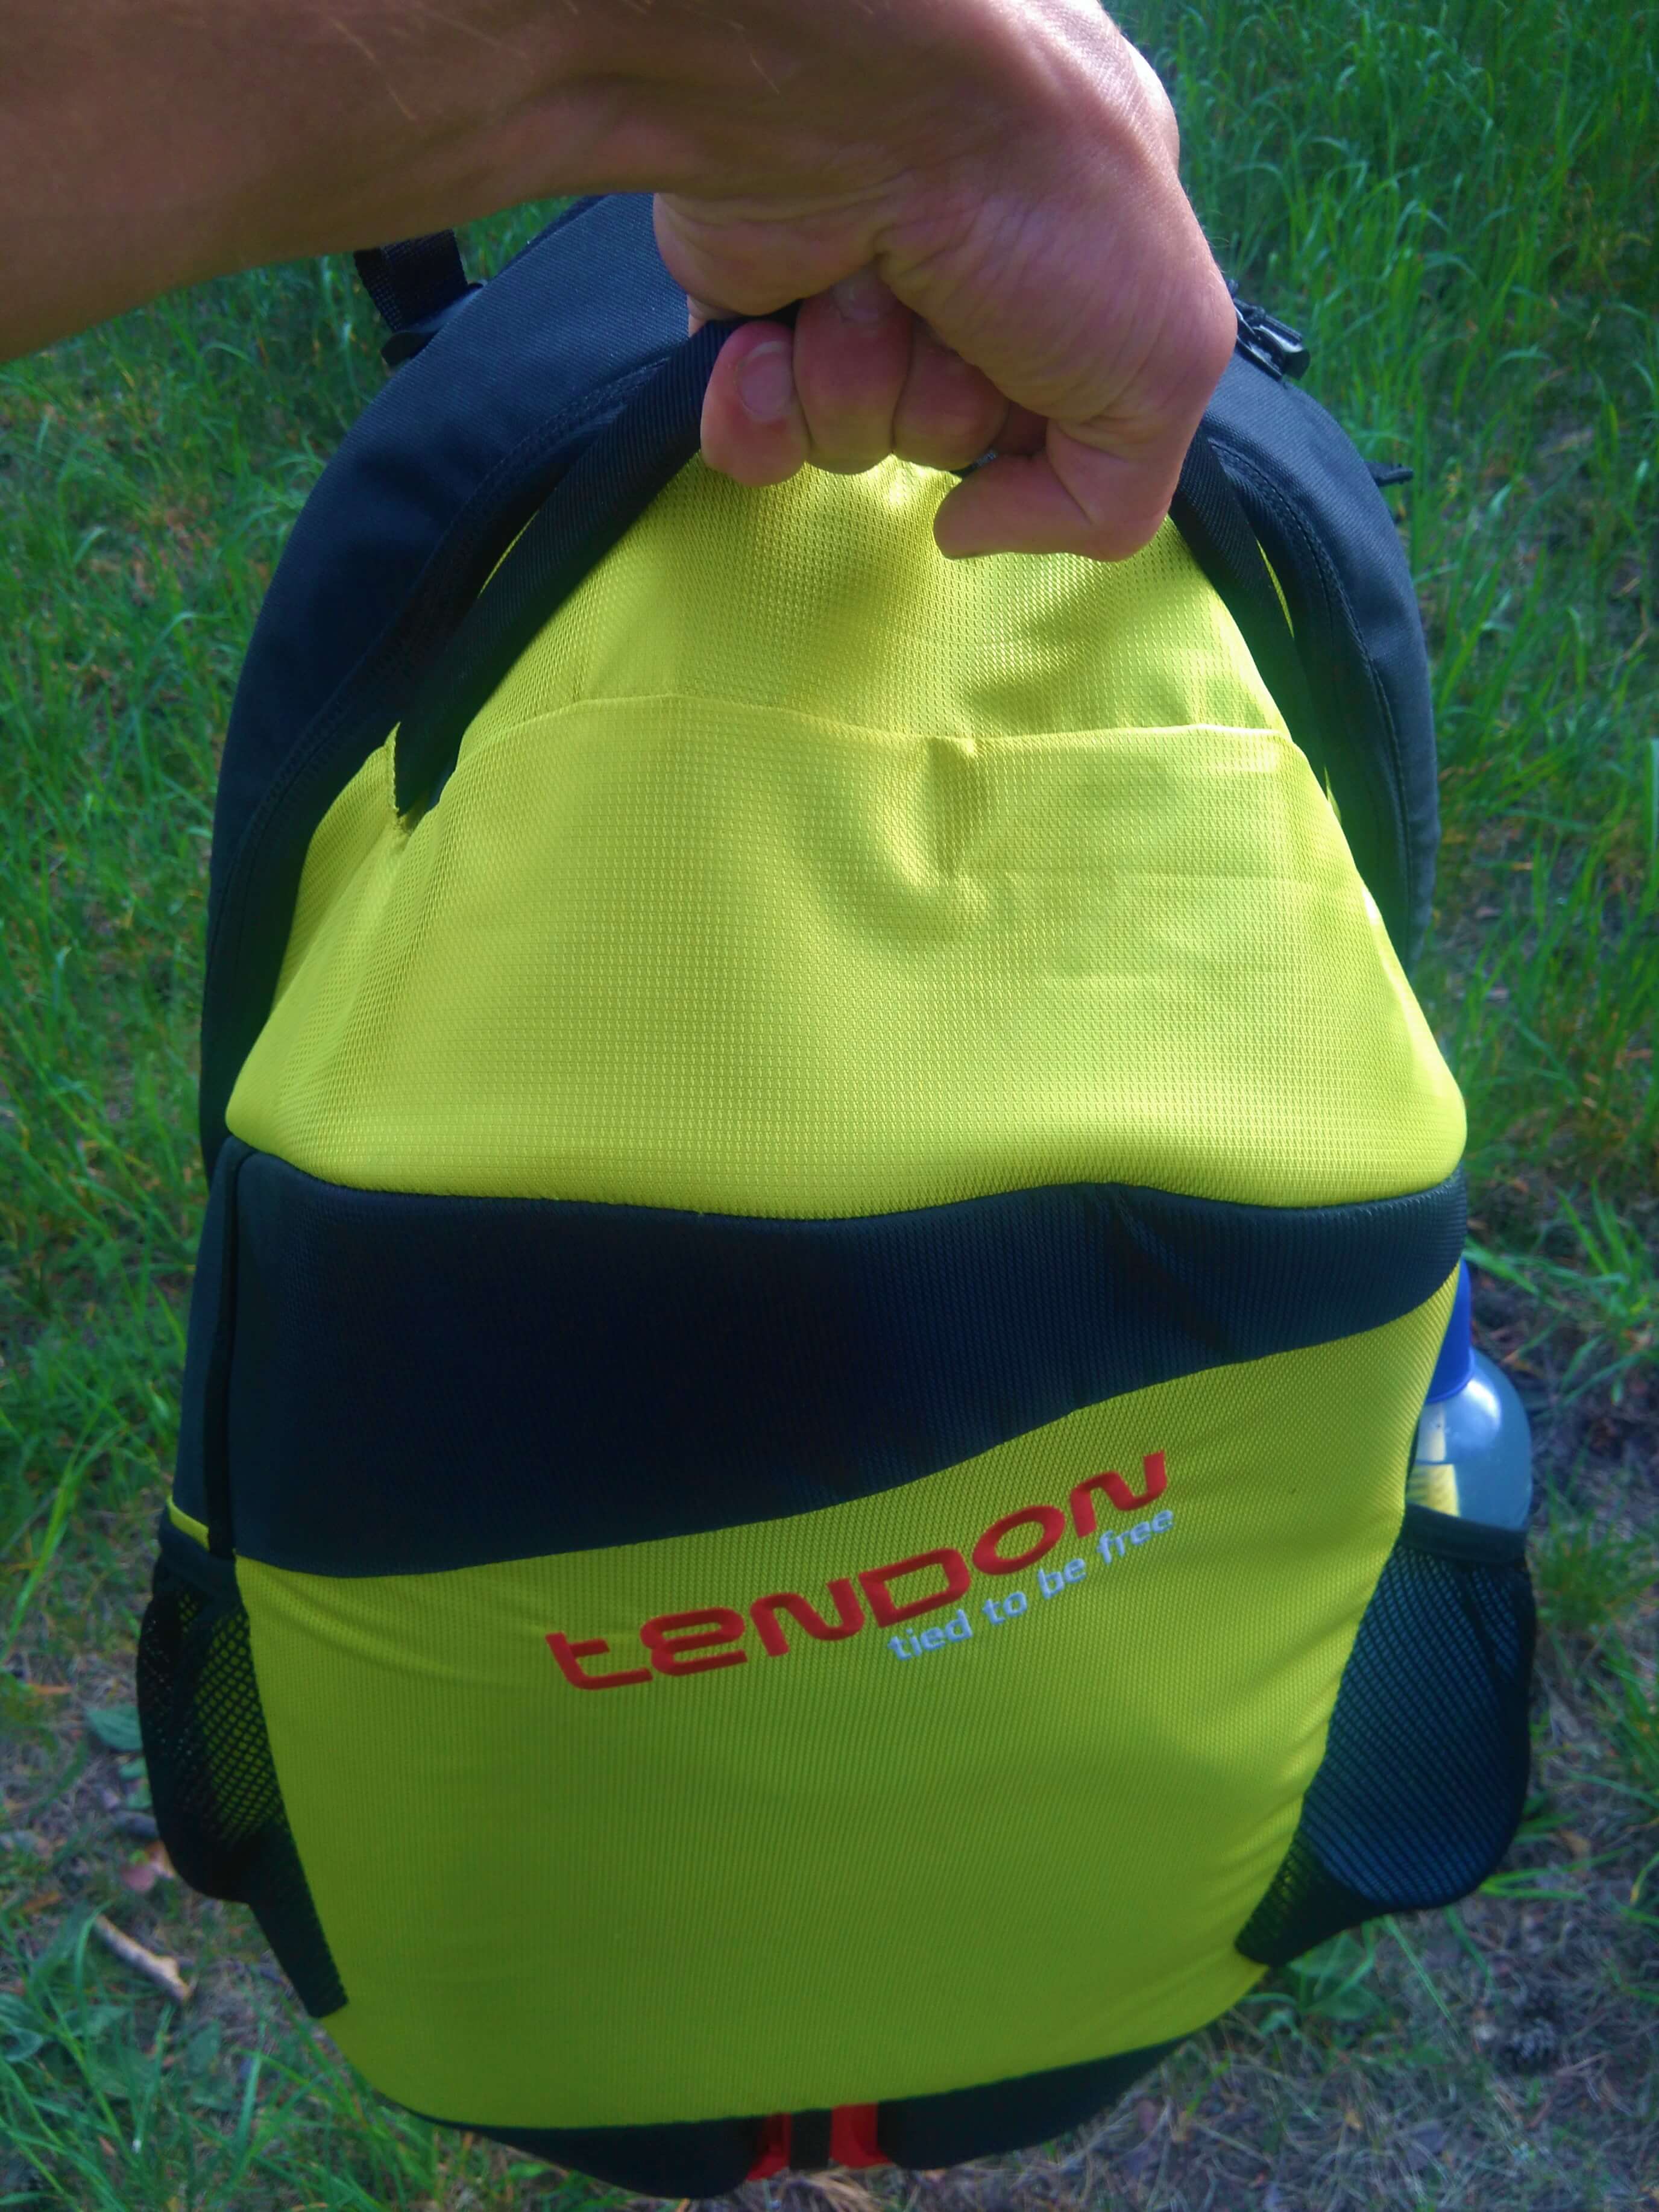 Horní madlo batohu Tendon Gear Bag je dostatečně velké a tuhé.